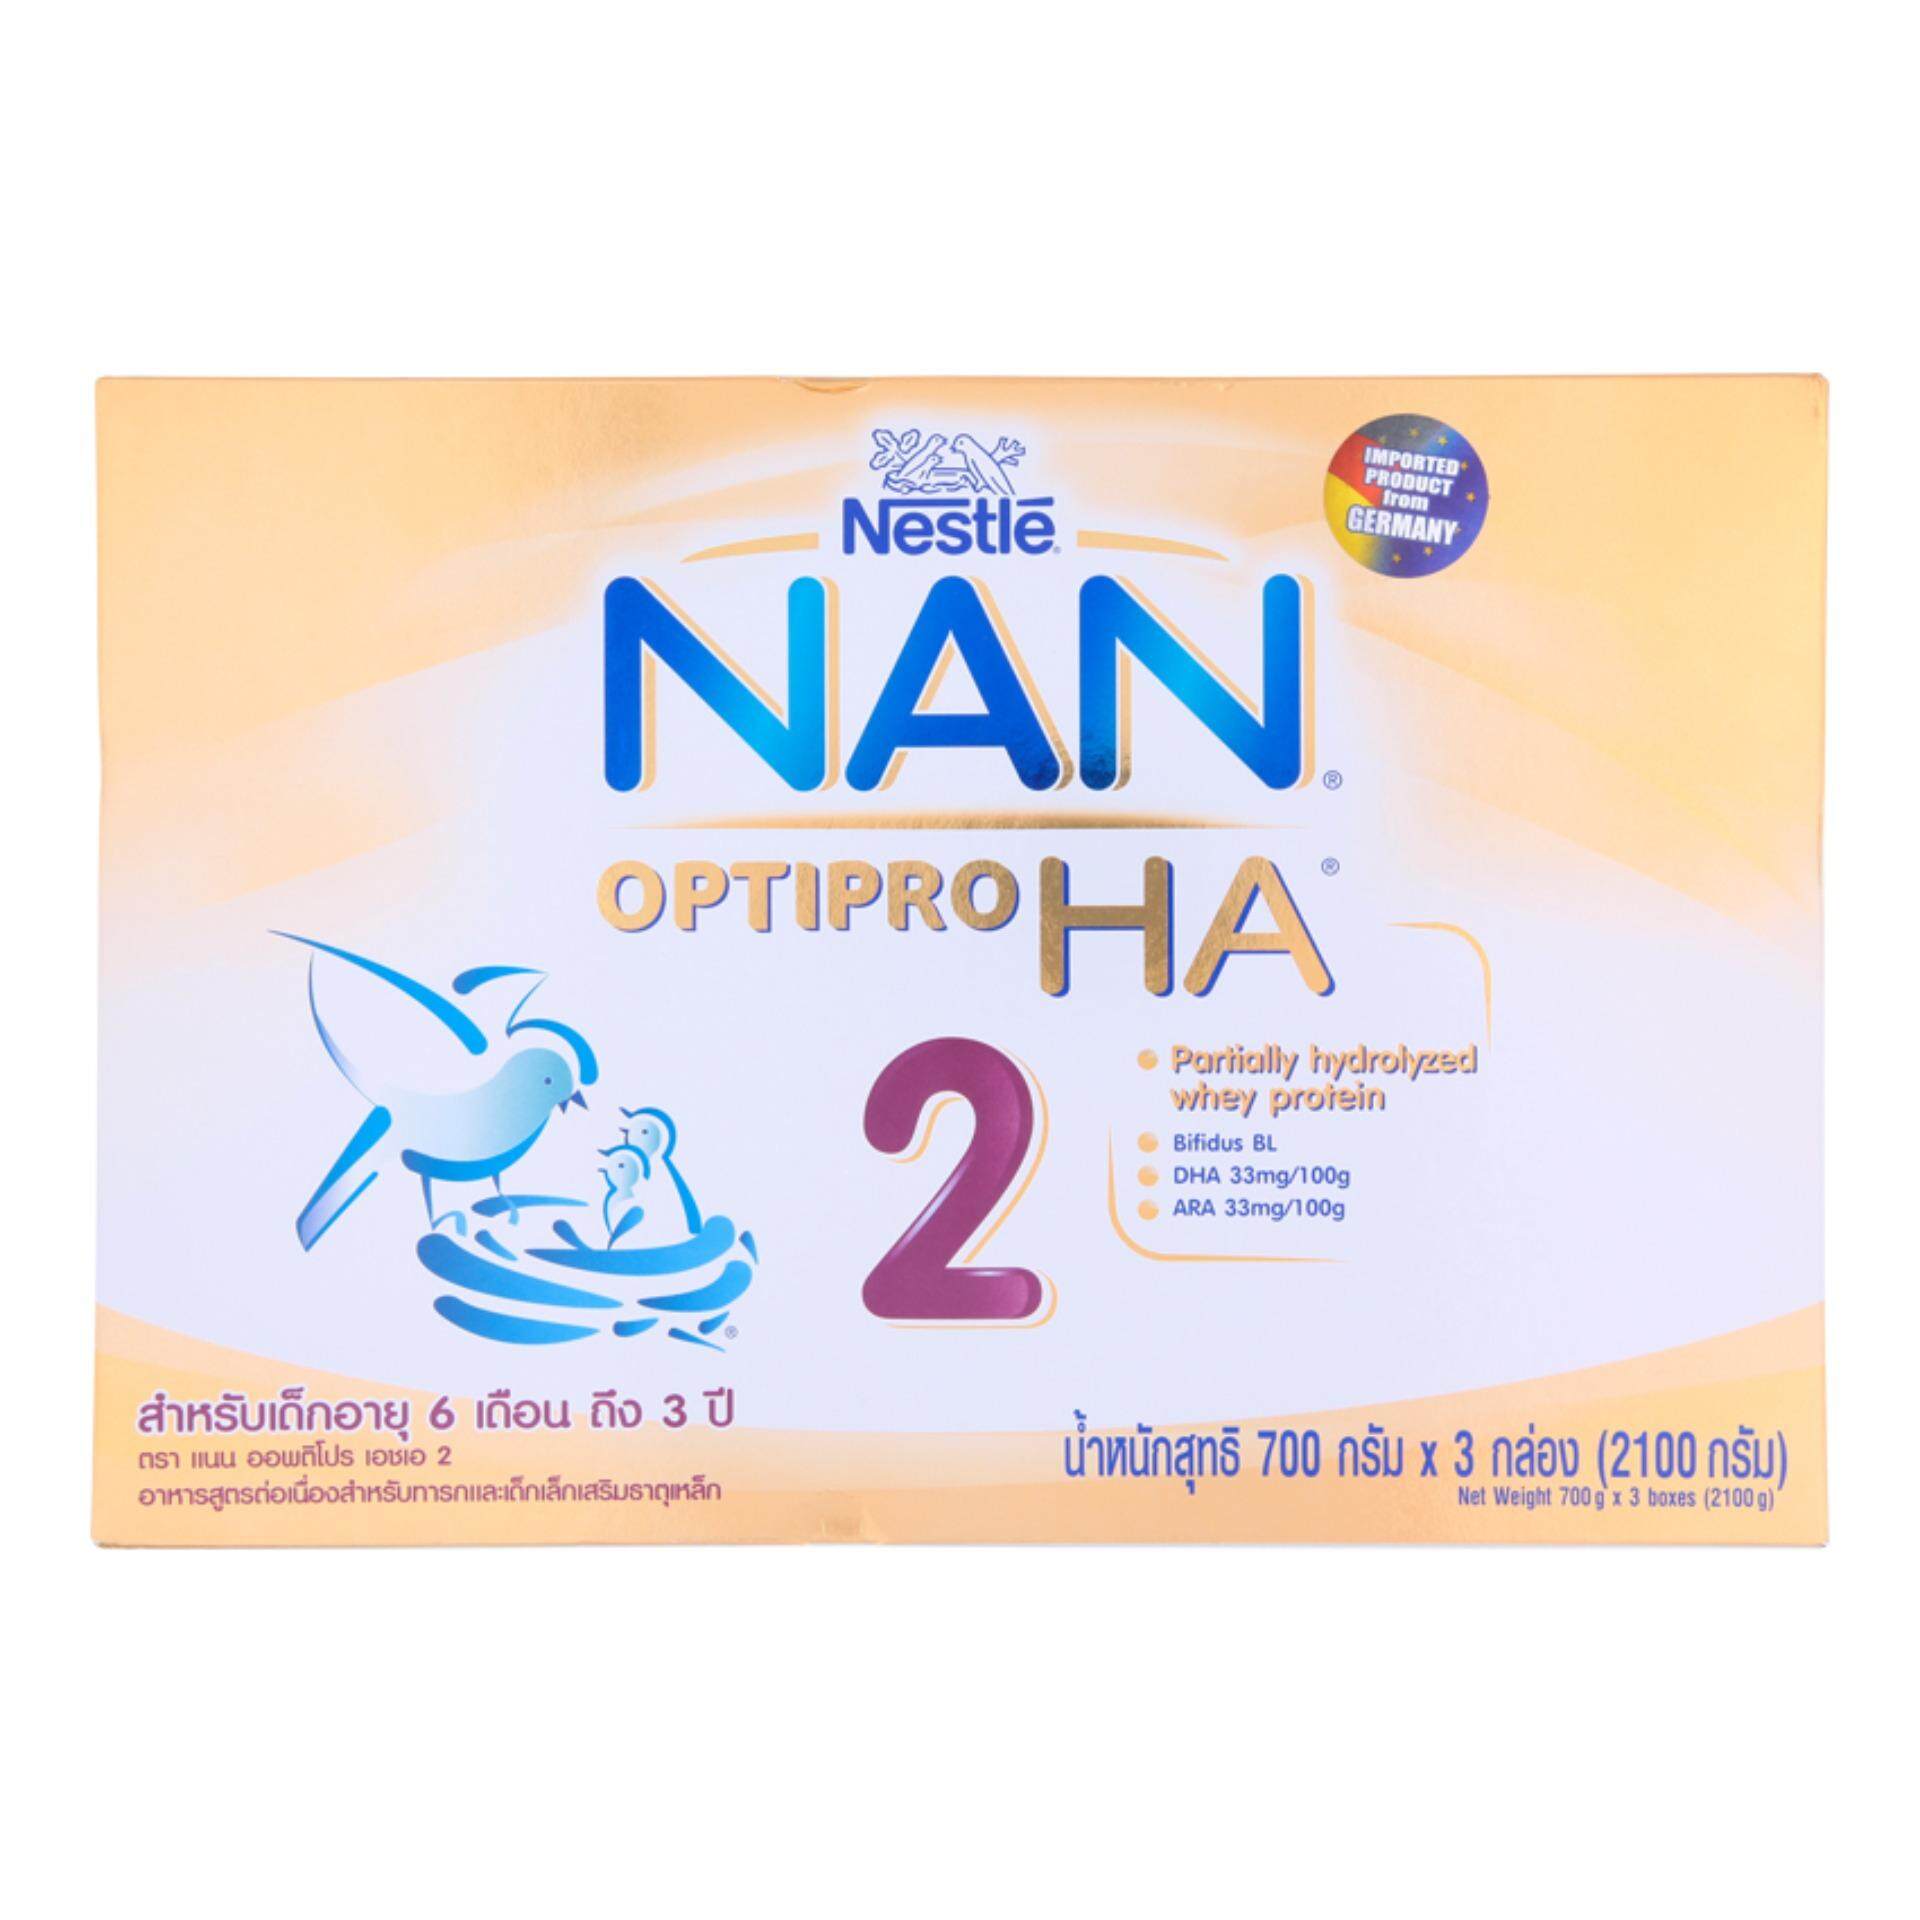 แนะนำ NAN แนน นมผงสำหรับเด็ก ช่วงวัยที่ 2 ออฟติโปร เอช เอ สูตรเสริมธาตุเหล็ก 2100 กรัม